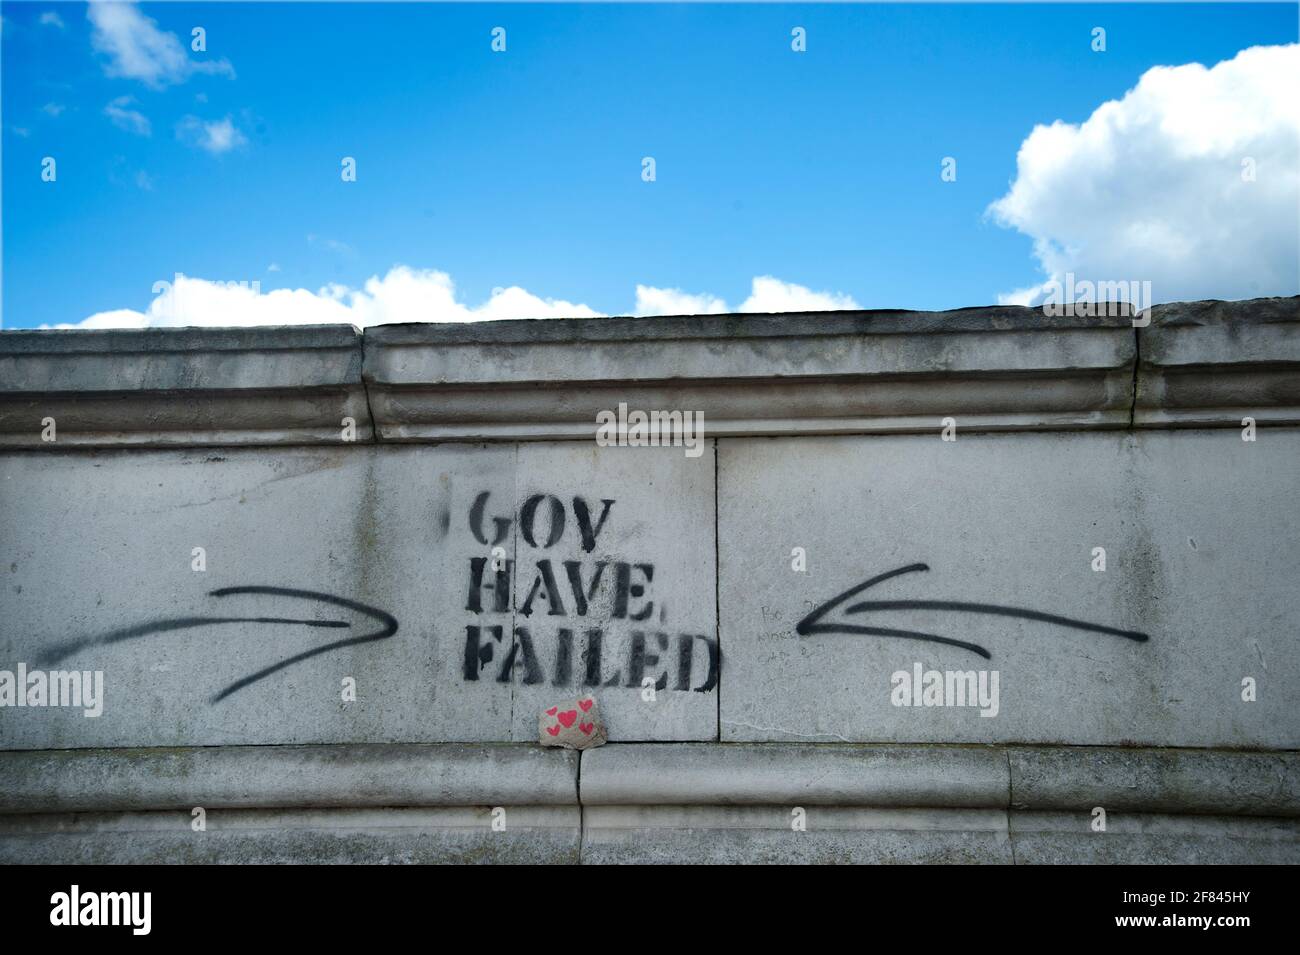 Southbank, Londra, Inghilterra, Regno Unito. Scritta stencilata che dice 'Gov sono falliti' sulla parete accanto al muro del memoriale di Covid. Foto Stock